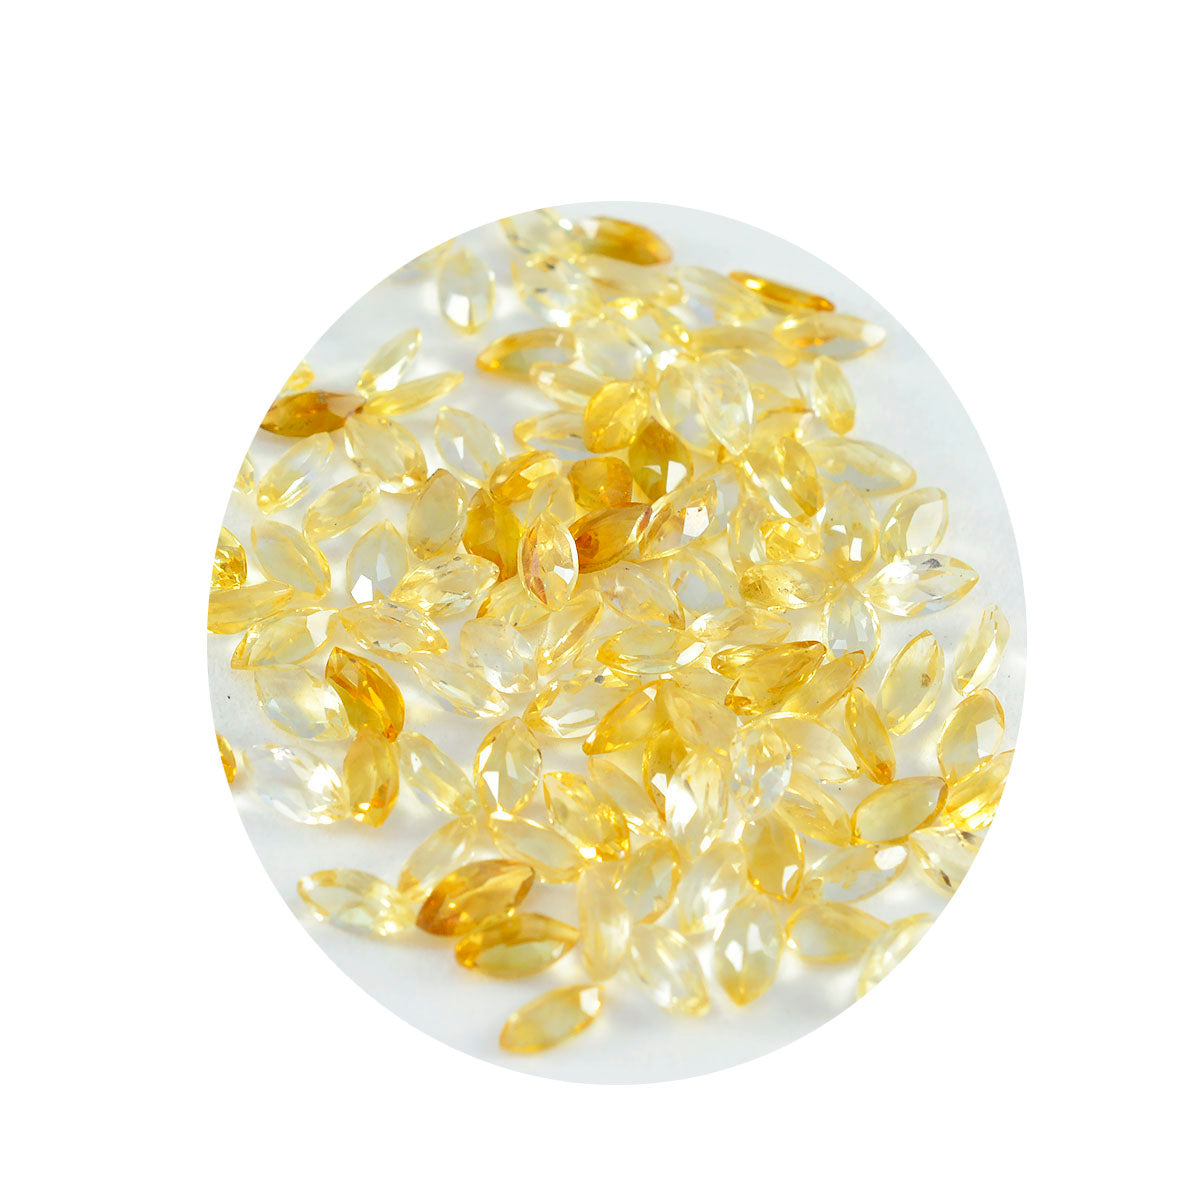 riyogems 1 шт. натуральный желтый цитрин ограненный 2x4 мм драгоценный камень в форме маркизы удивительного качества